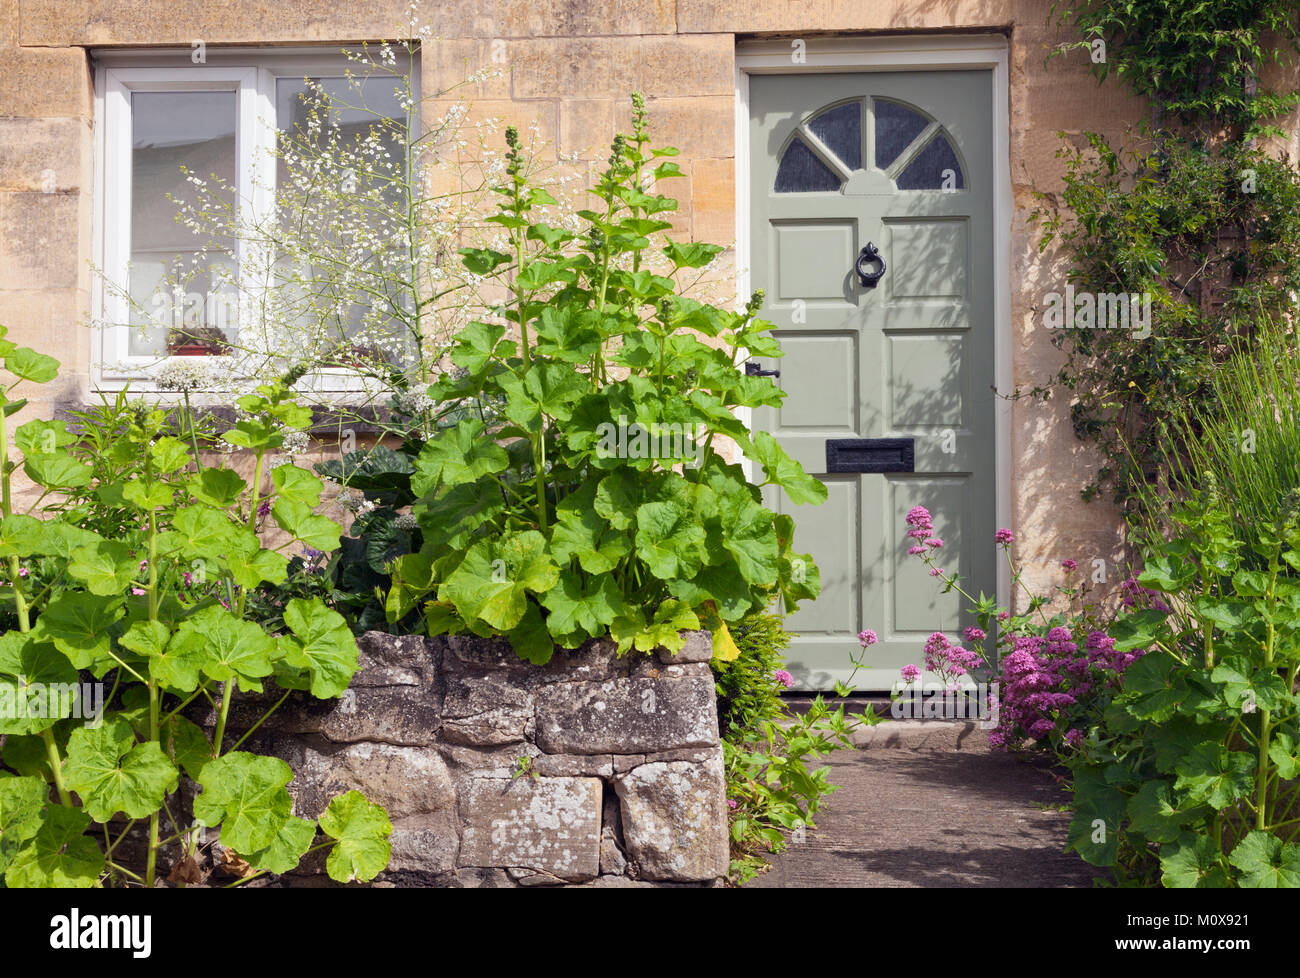 Portes en bois vert dans une vieille maison en pierre, de roses trémières et d'autres fleurs cottage et des arbustes dans le jardin de devant, dans un charmant village de l'anglais Lit bébé Banque D'Images